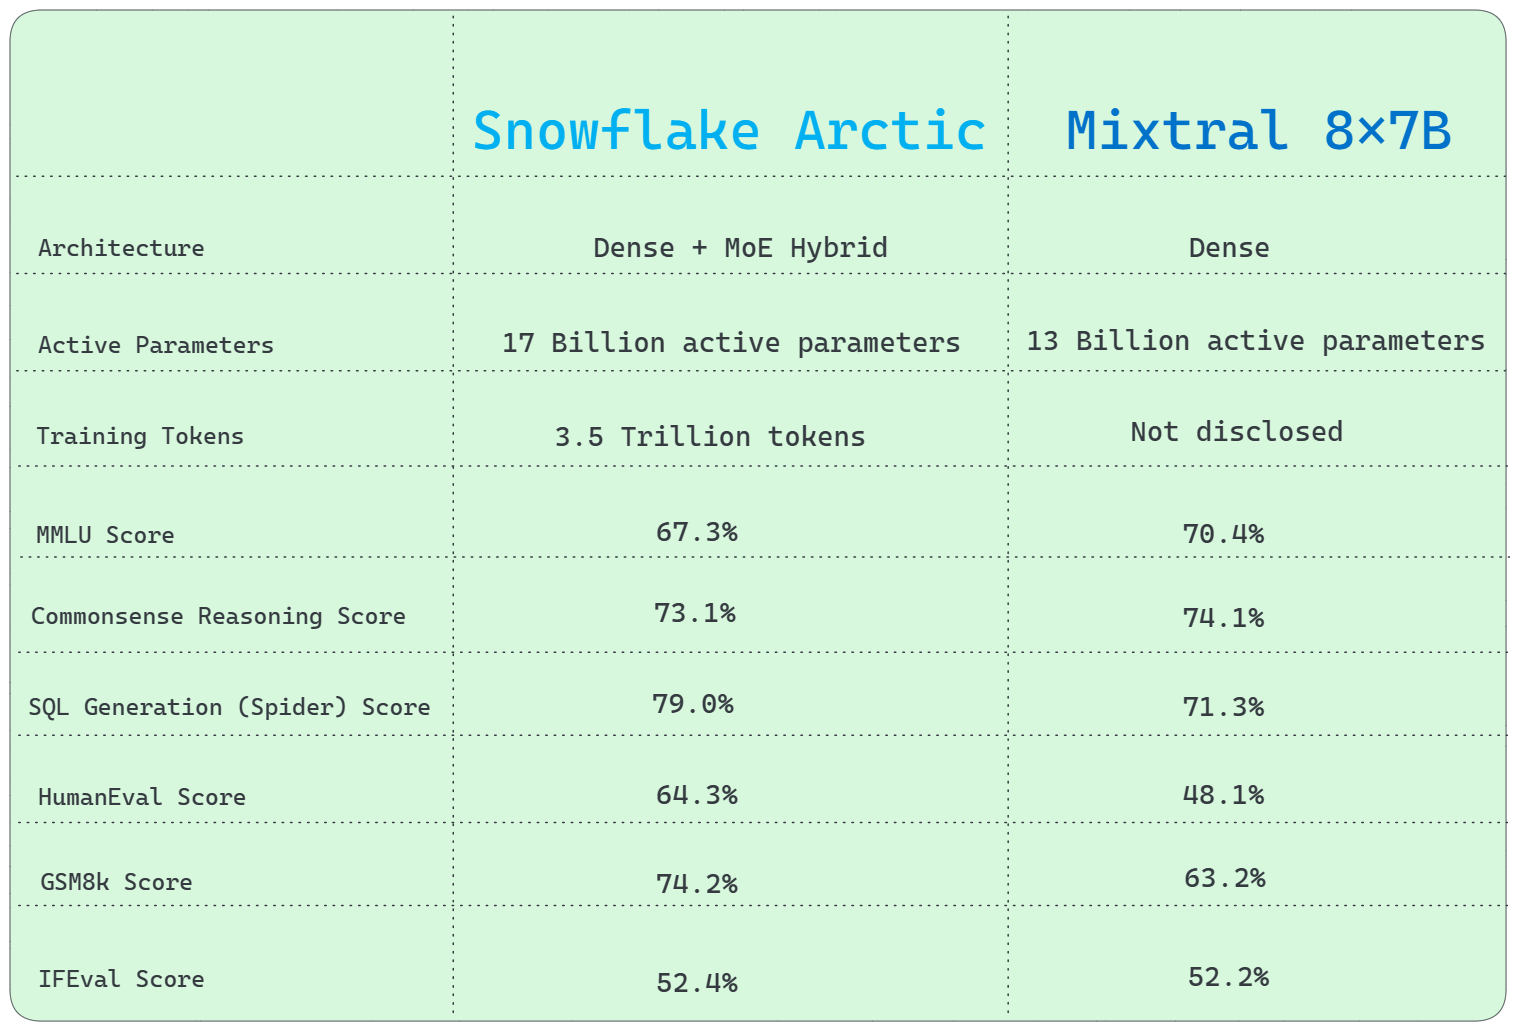 Snowflake Arctic vs. Mixtral 8x7B